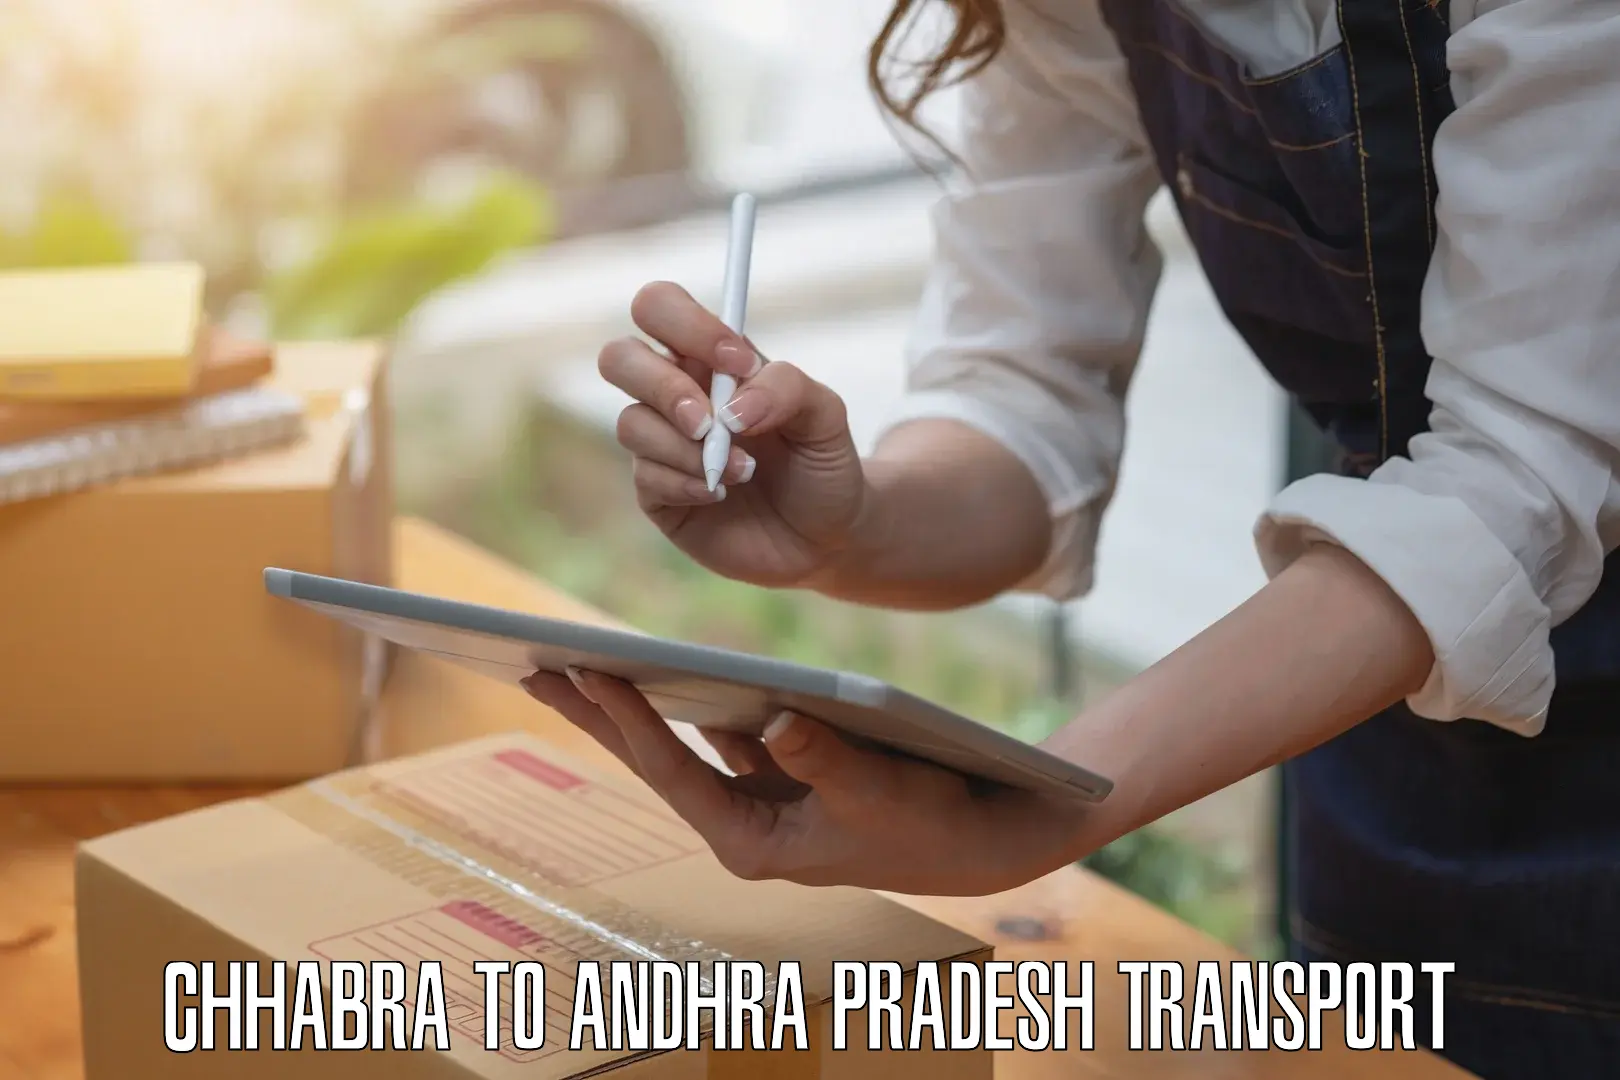 Delivery service Chhabra to Narsipatnam